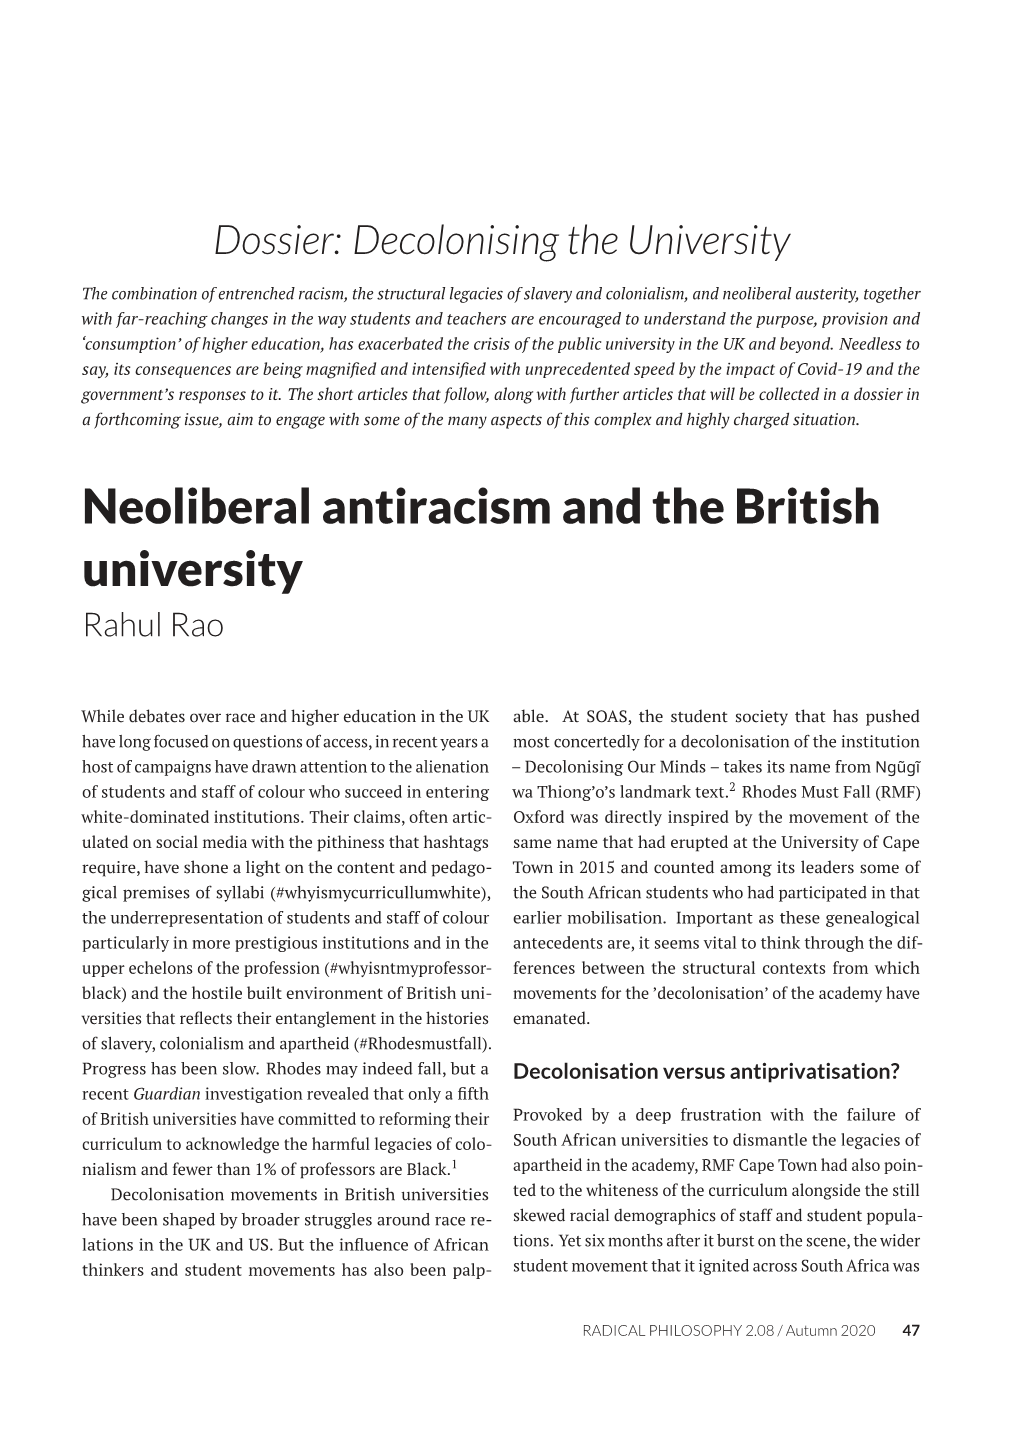 Neoliberal Antiracism and the British University Rahul Rao